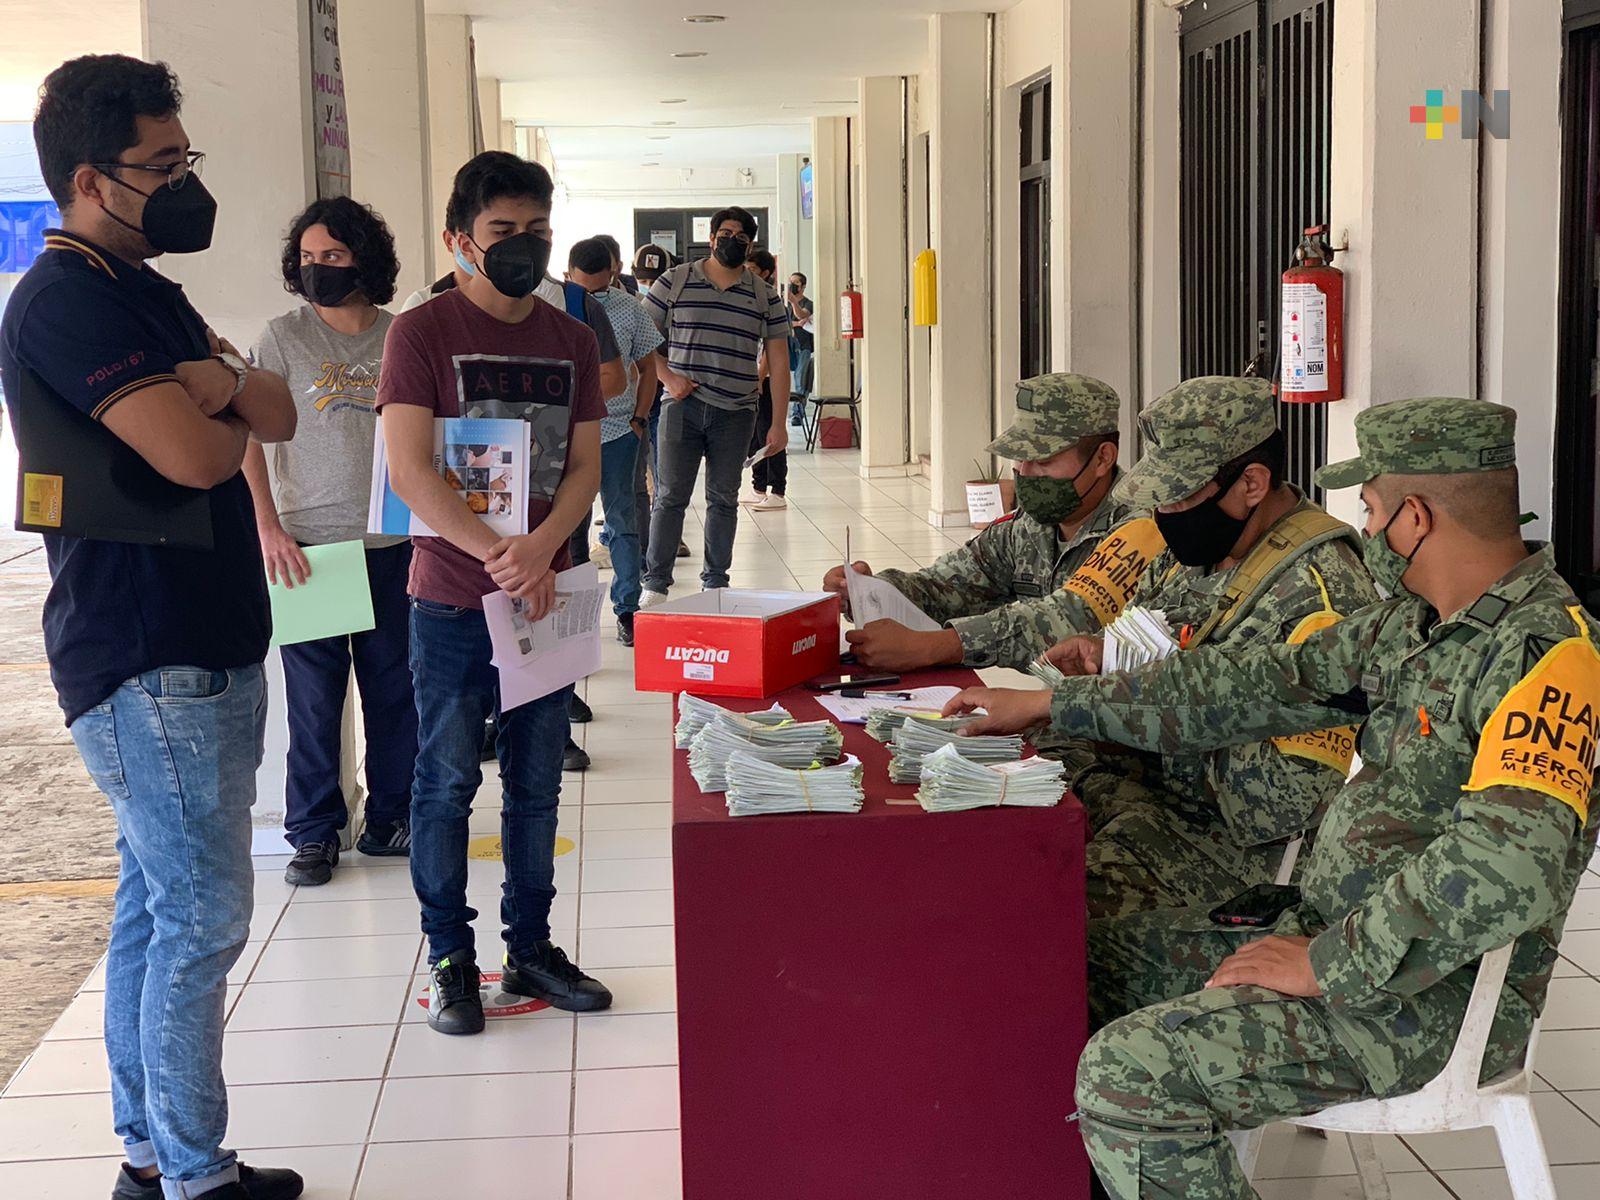 Reciben jóvenes cartilla liberada del Servicio Militar Nacional en Coatzacoalcos